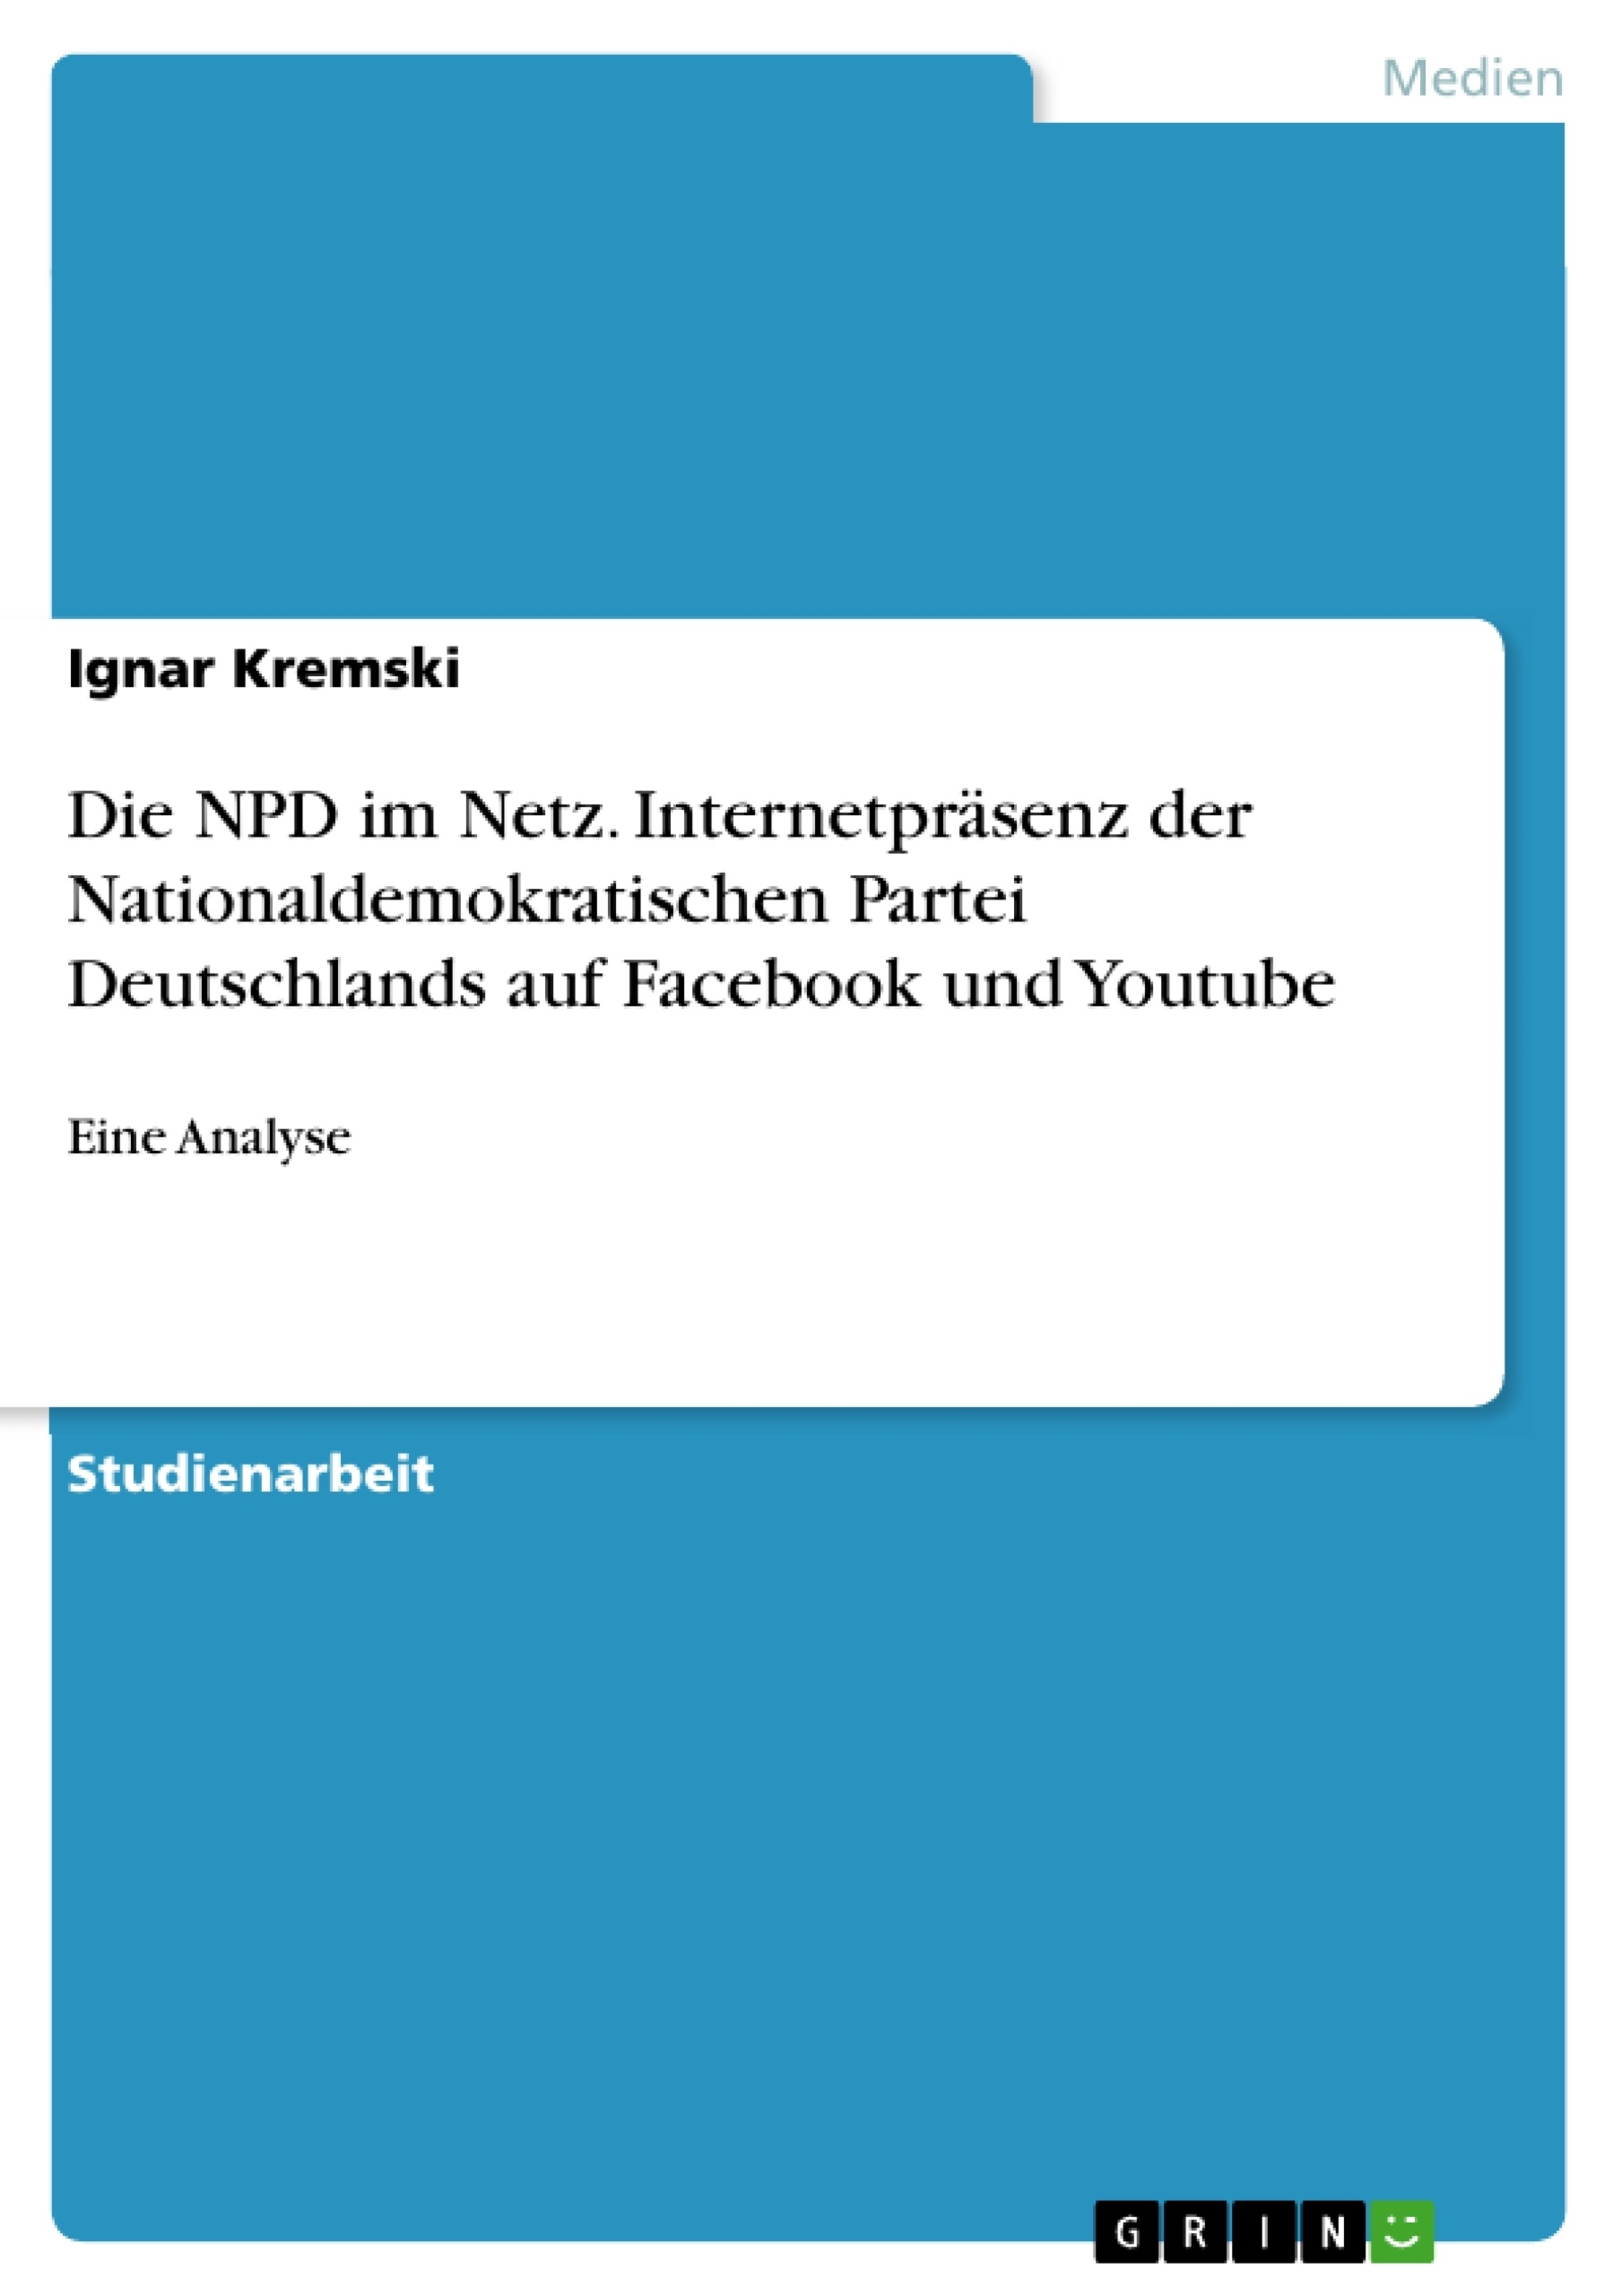 Título: Die NPD im Netz. Internetpräsenz der Nationaldemokratischen Partei Deutschlands auf Facebook und Youtube